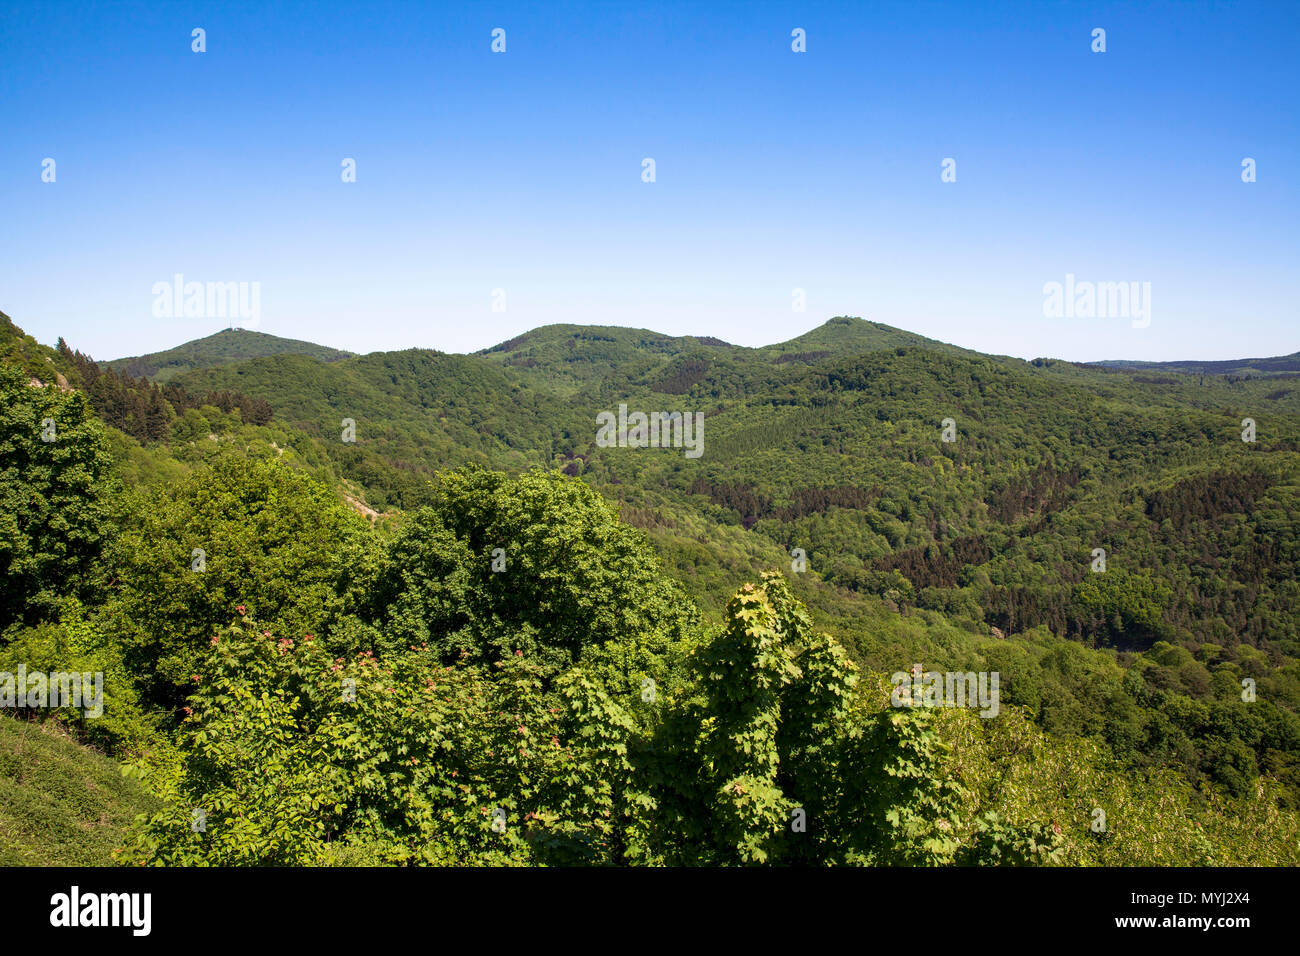 L'Allemagne, les collines du Siebengebirge, couronné du parc naturel près de Siebengebirge Koenigswinter. Siebengebirge, Deutschland, die bewaldeten Huegel d Banque D'Images